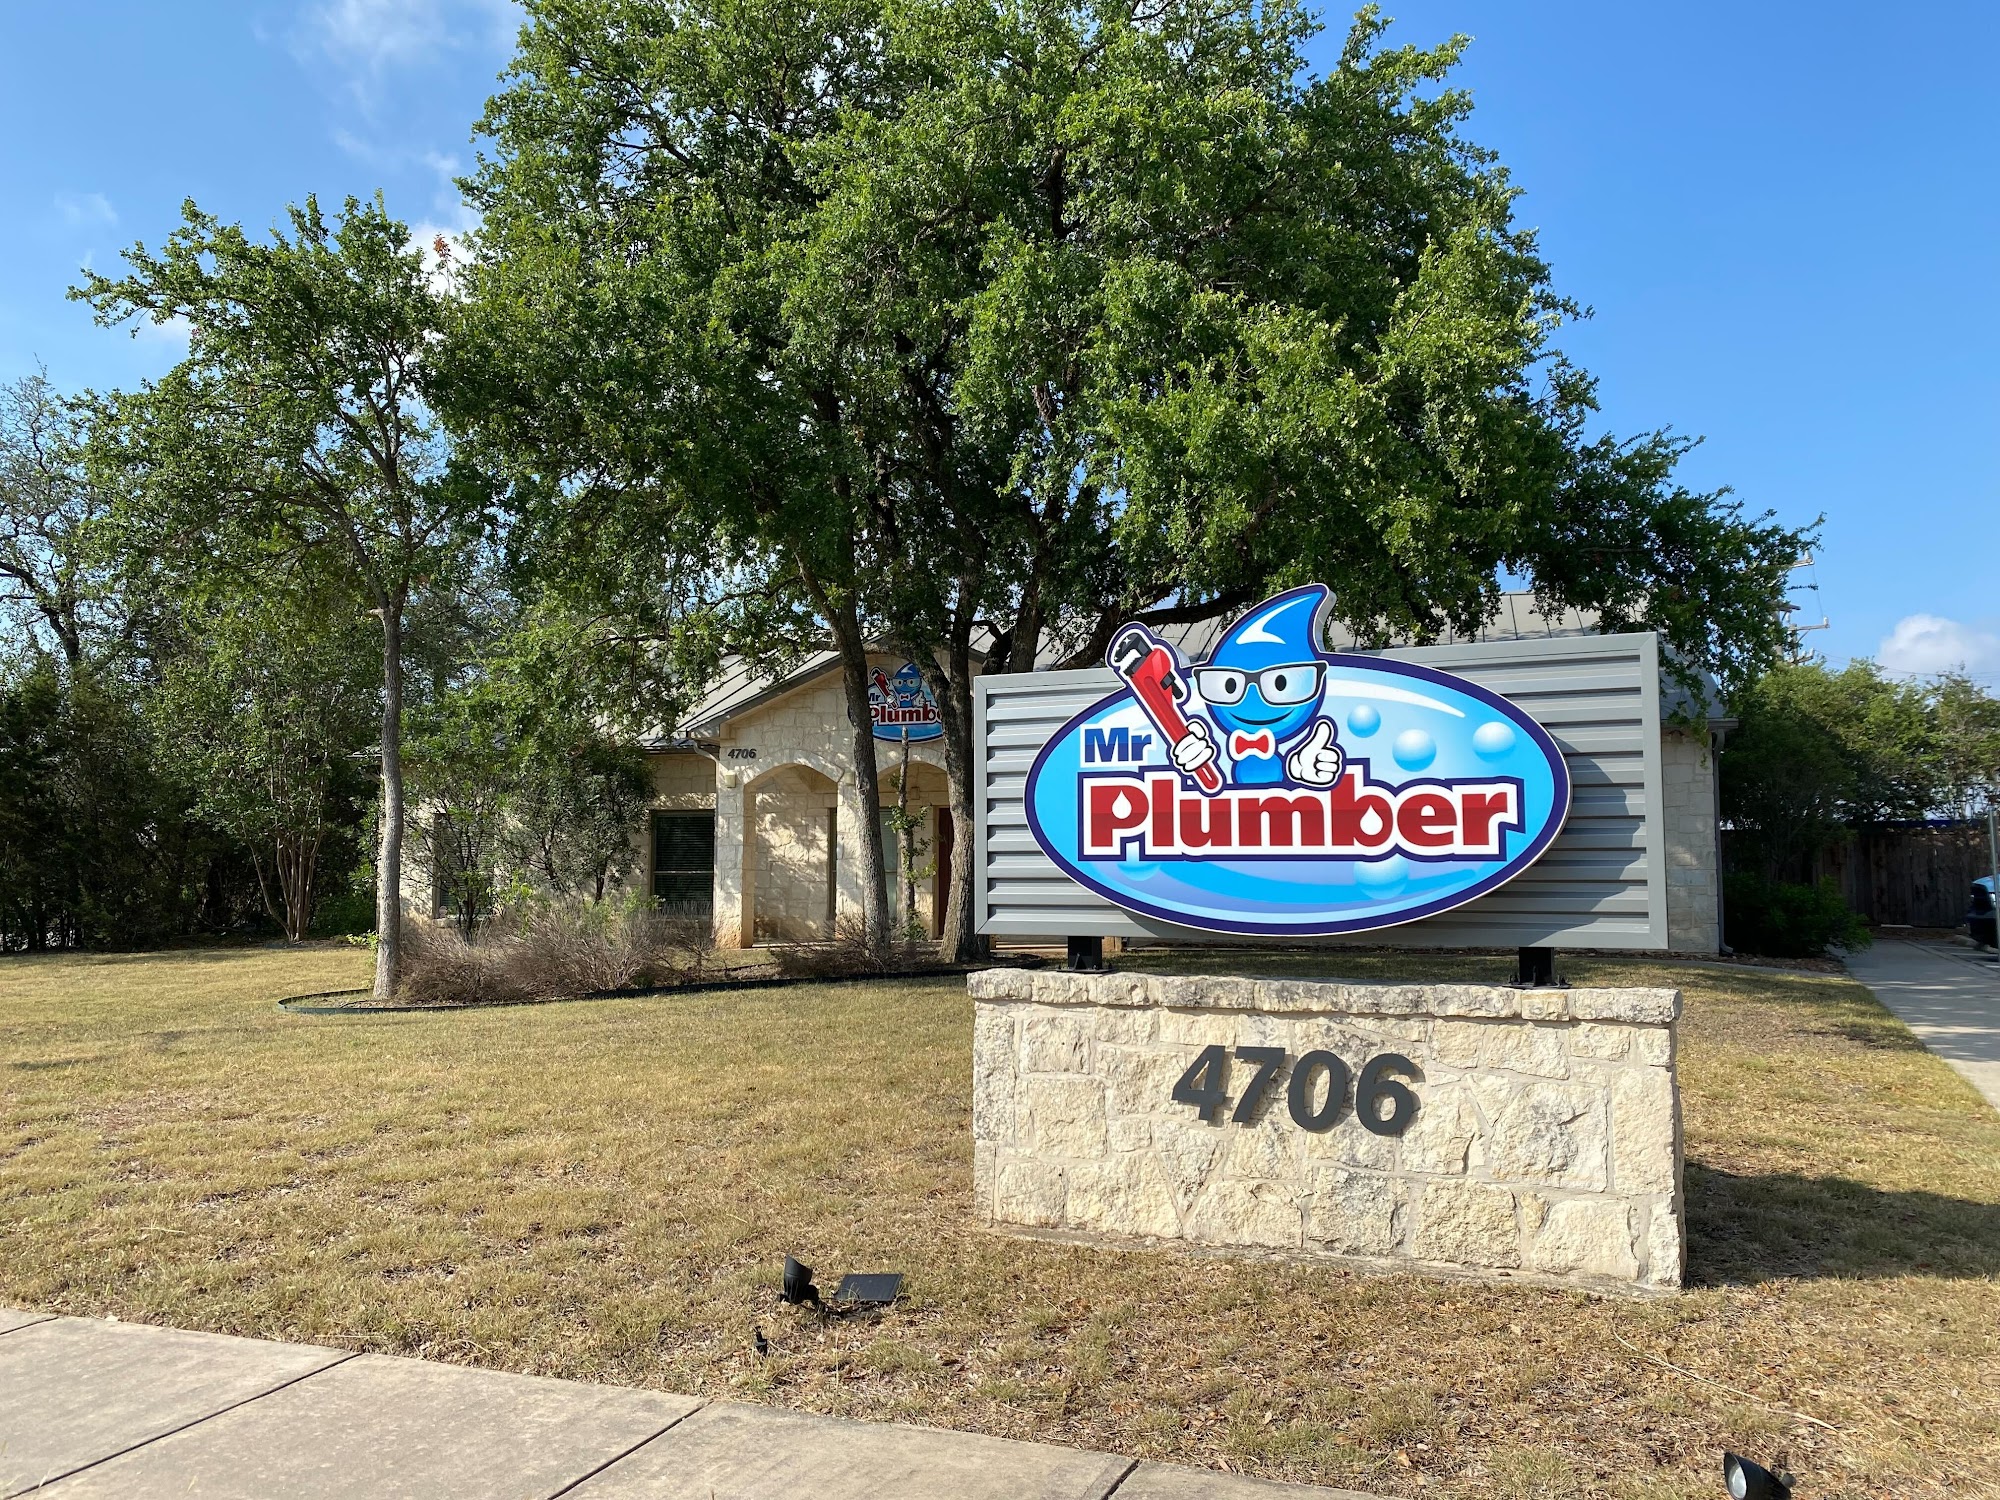 Mr. Plumber Plumbing Co. 238 North Loop 1604 East Ste. 106, San Antonio Texas 78232